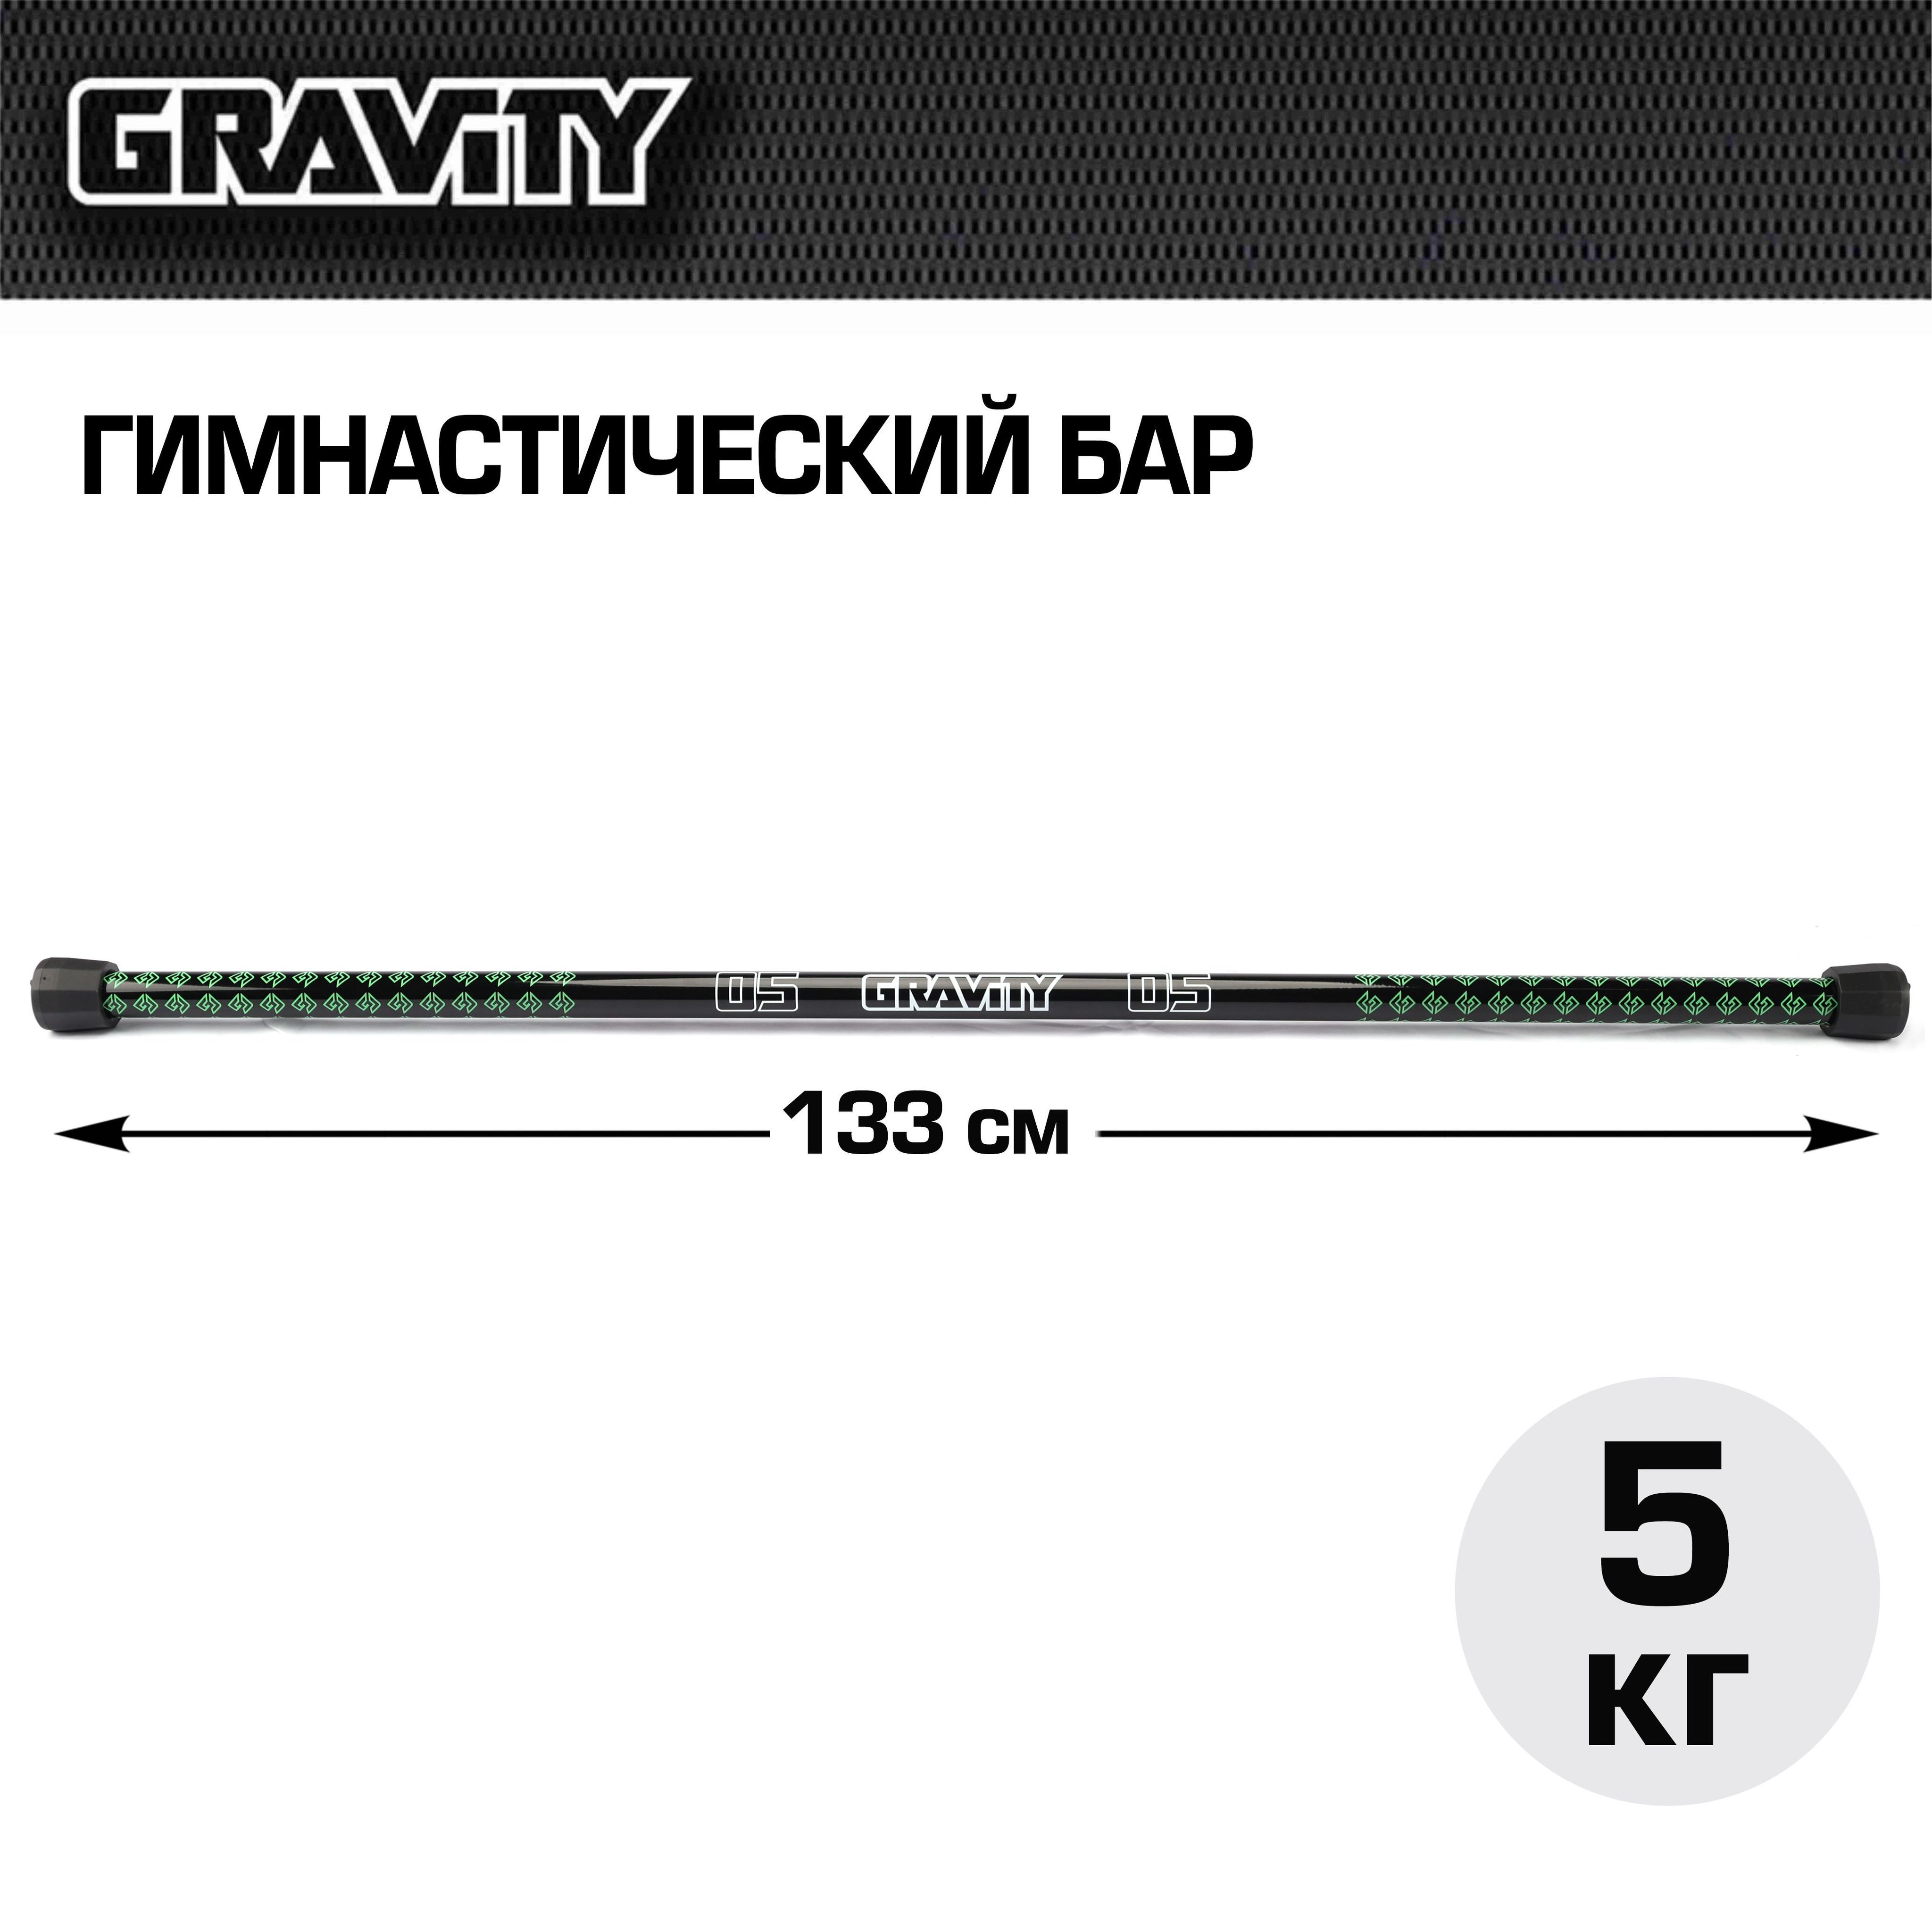 Гимнастический бар Gravity, 5 кг